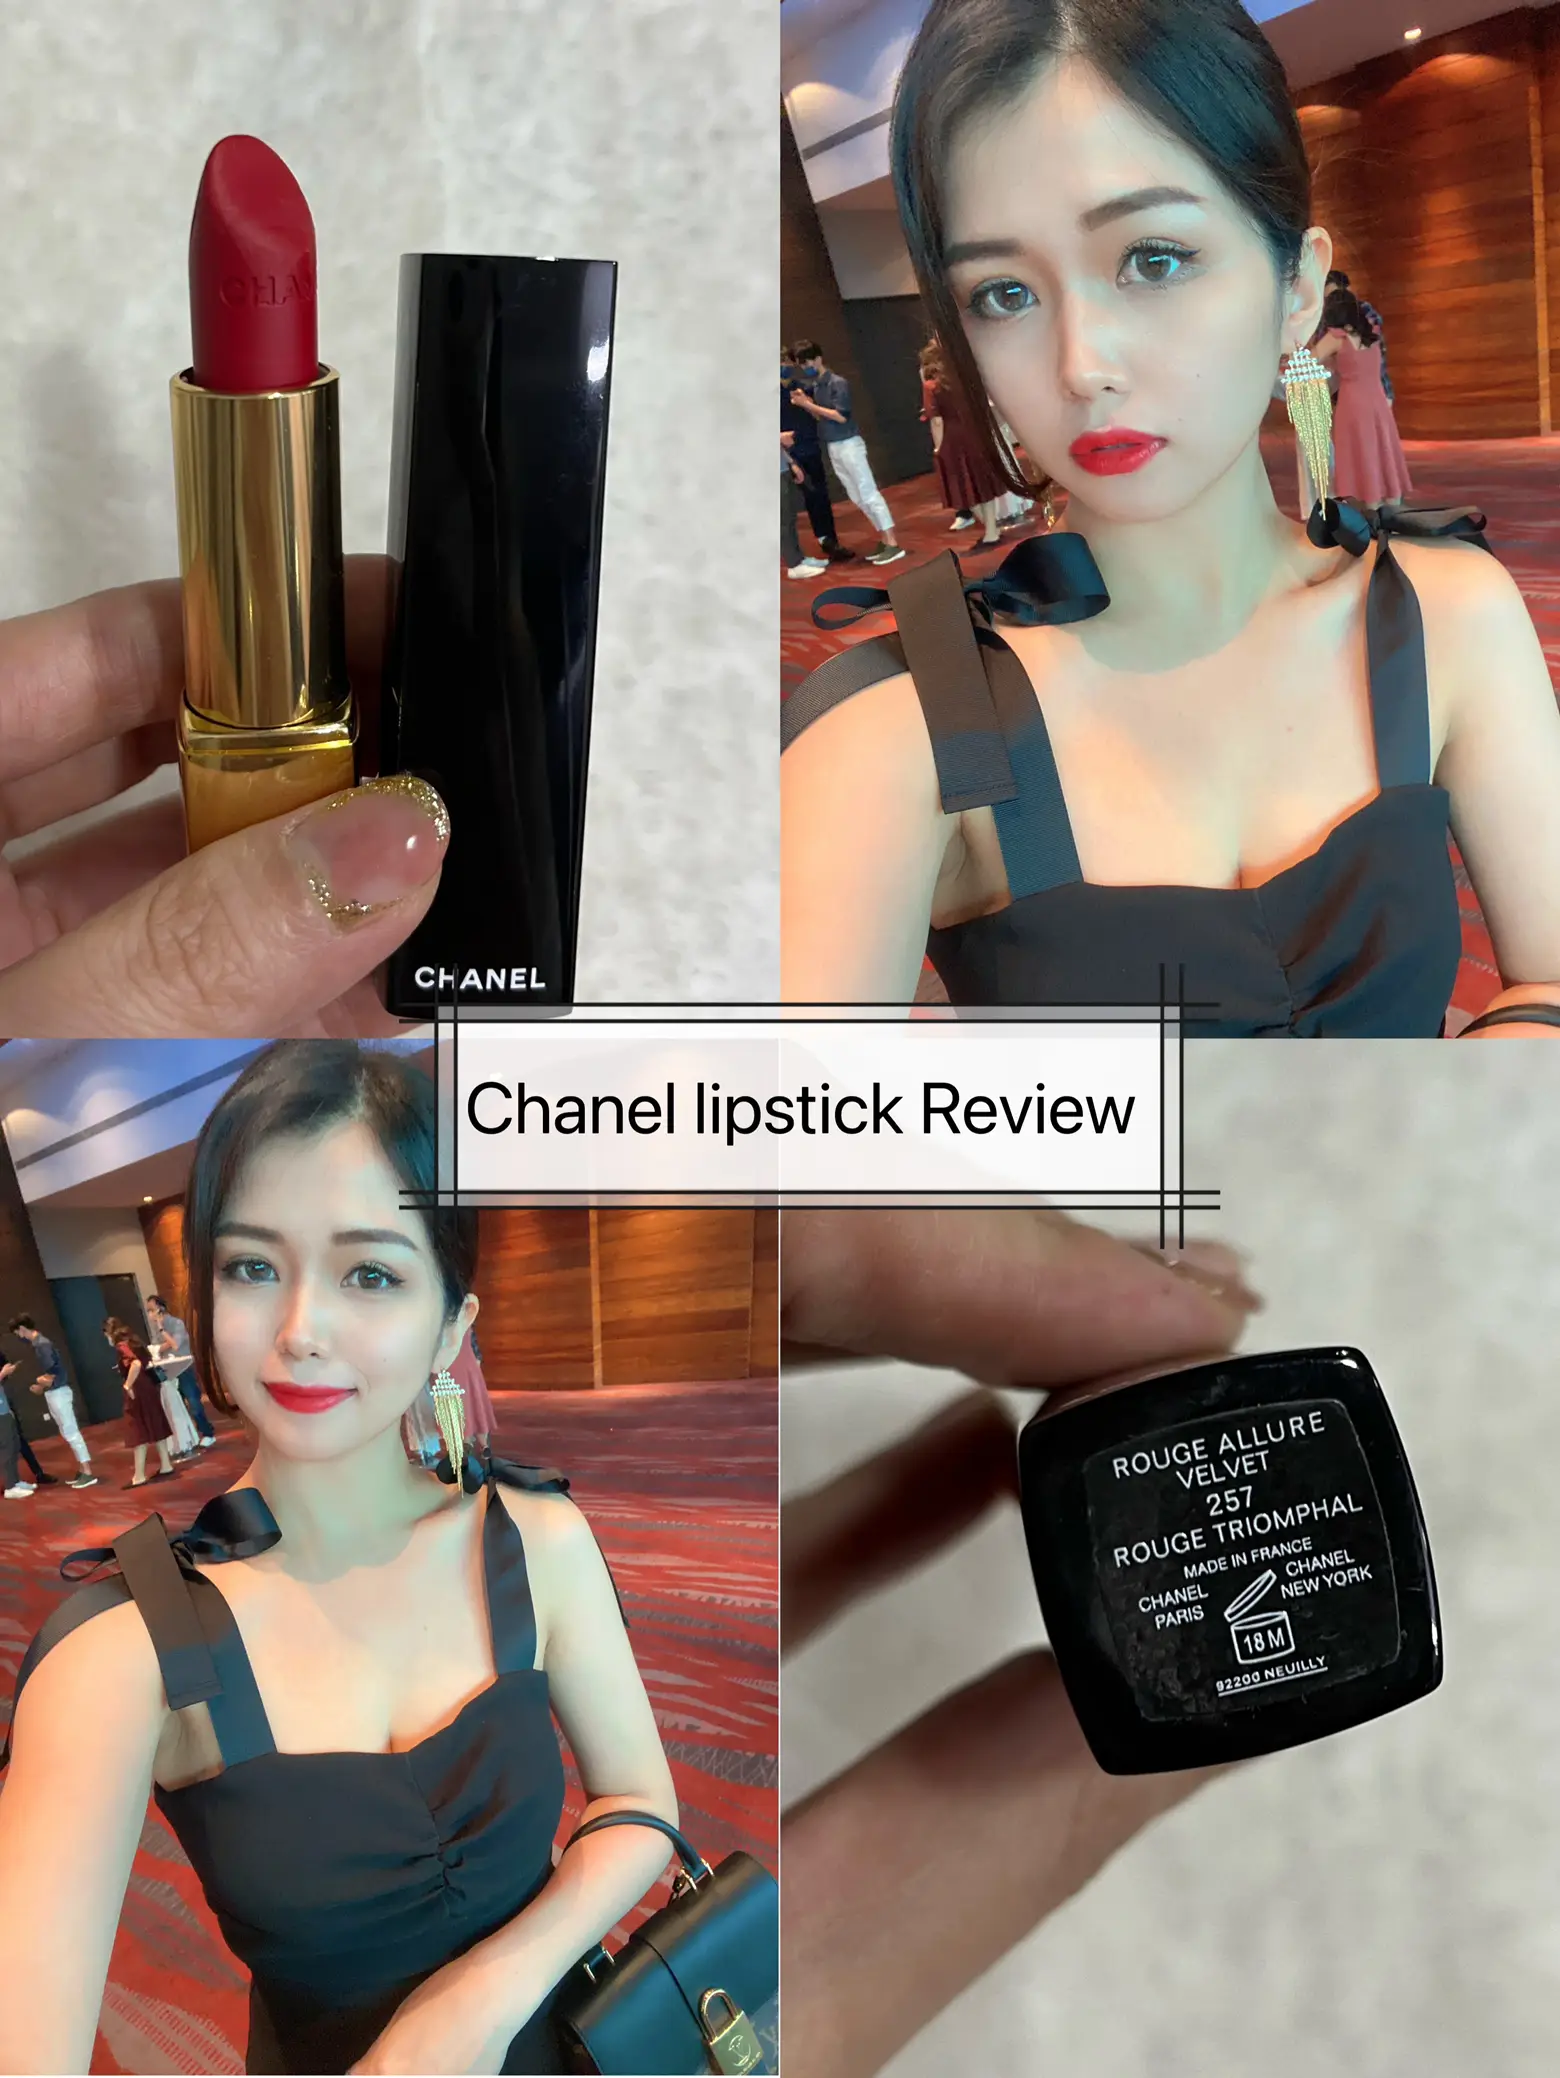 Chanel Rouge Allure Velvet Le Lion de Chanel - The Beauty Look Book